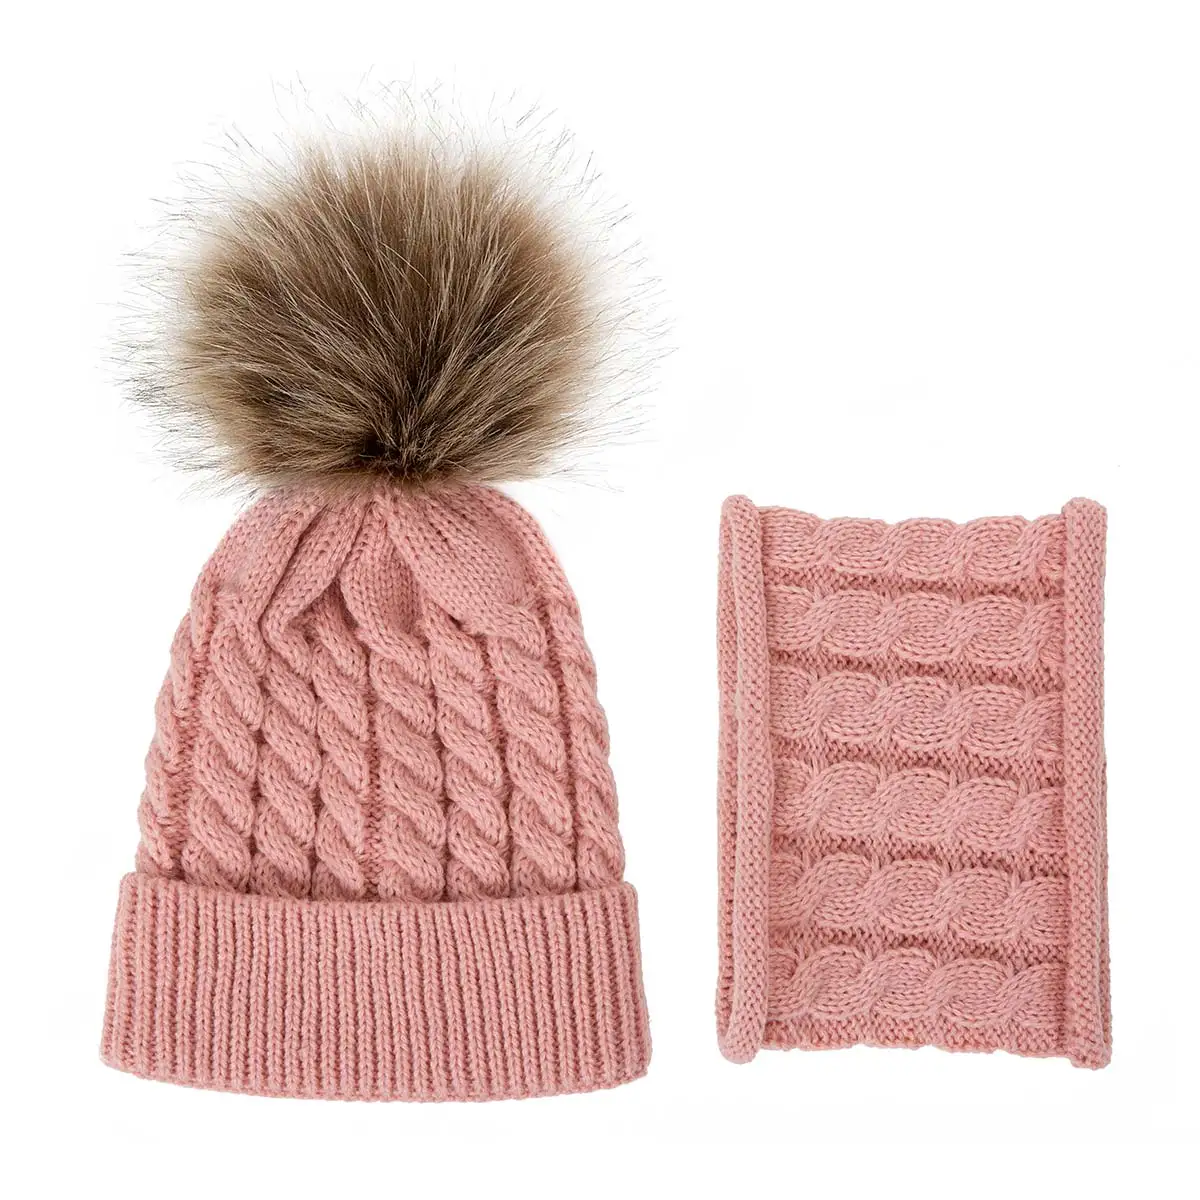 Осенне-зимняя детская шапка, Новая повседневная однотонная детская теплая хлопковая шапка, вязаная Милая шапка для девочек, шапочки-шапочки для детей 0-3 лет